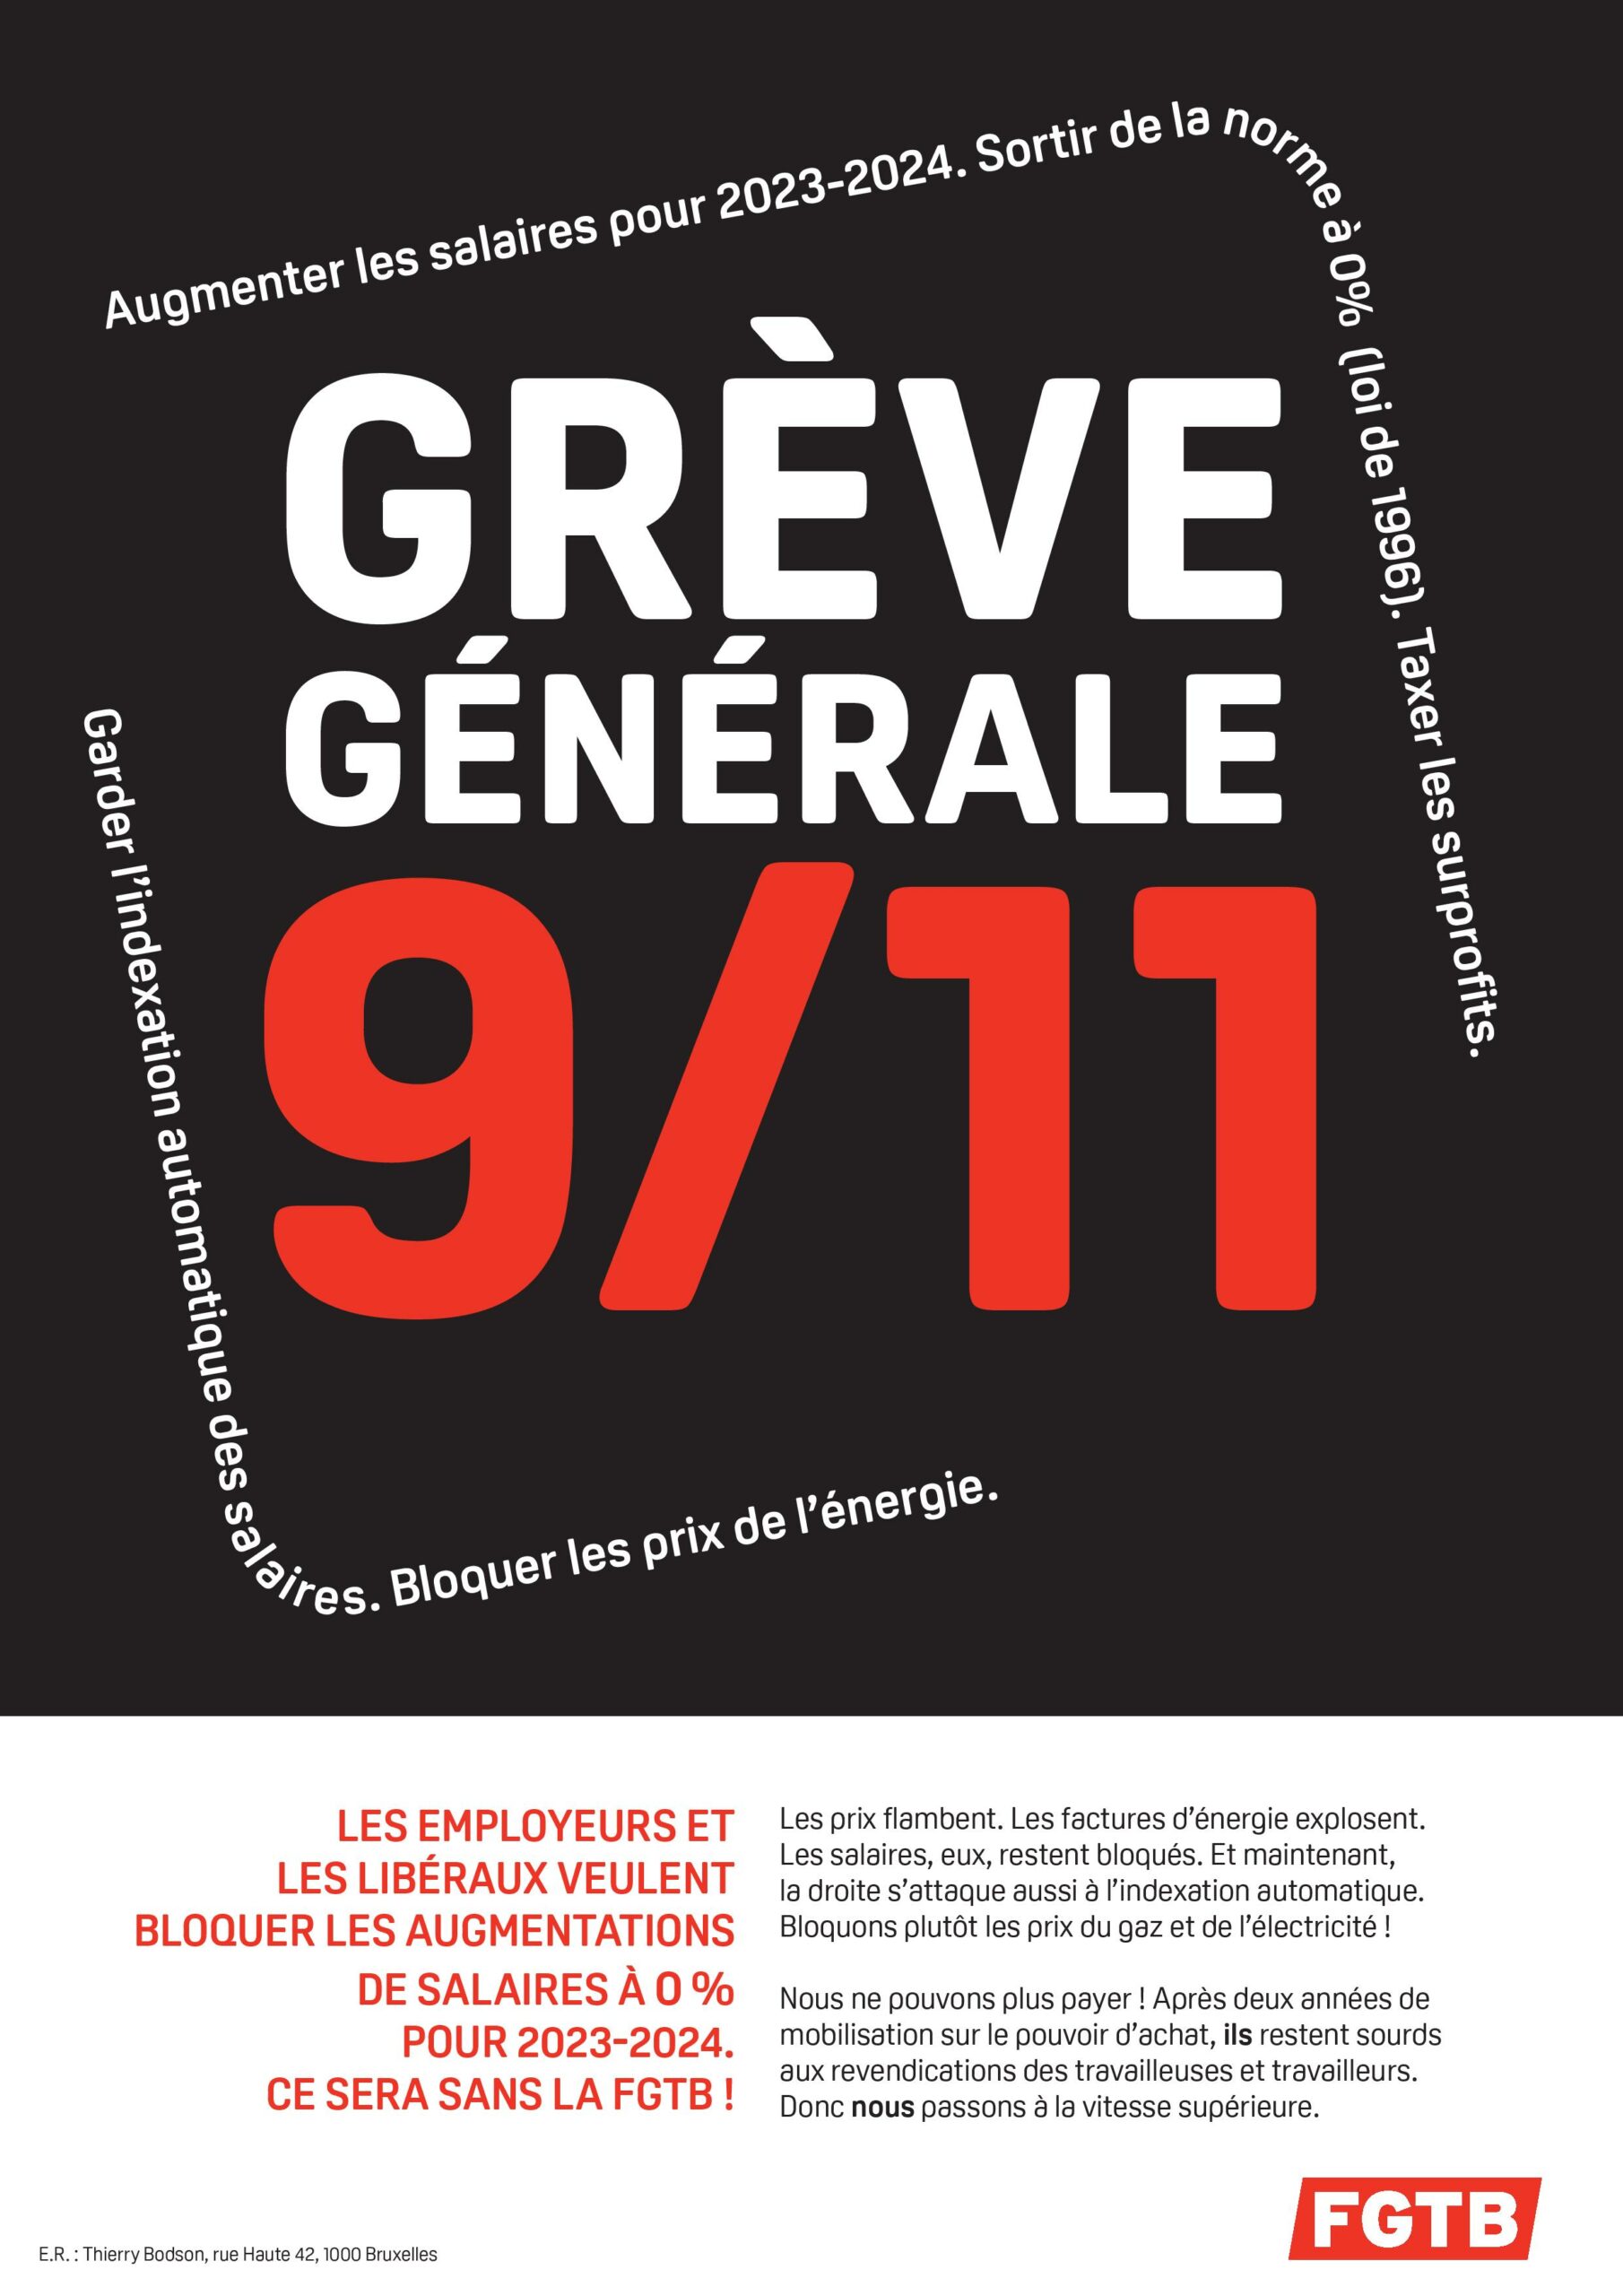 Image Grève générale 